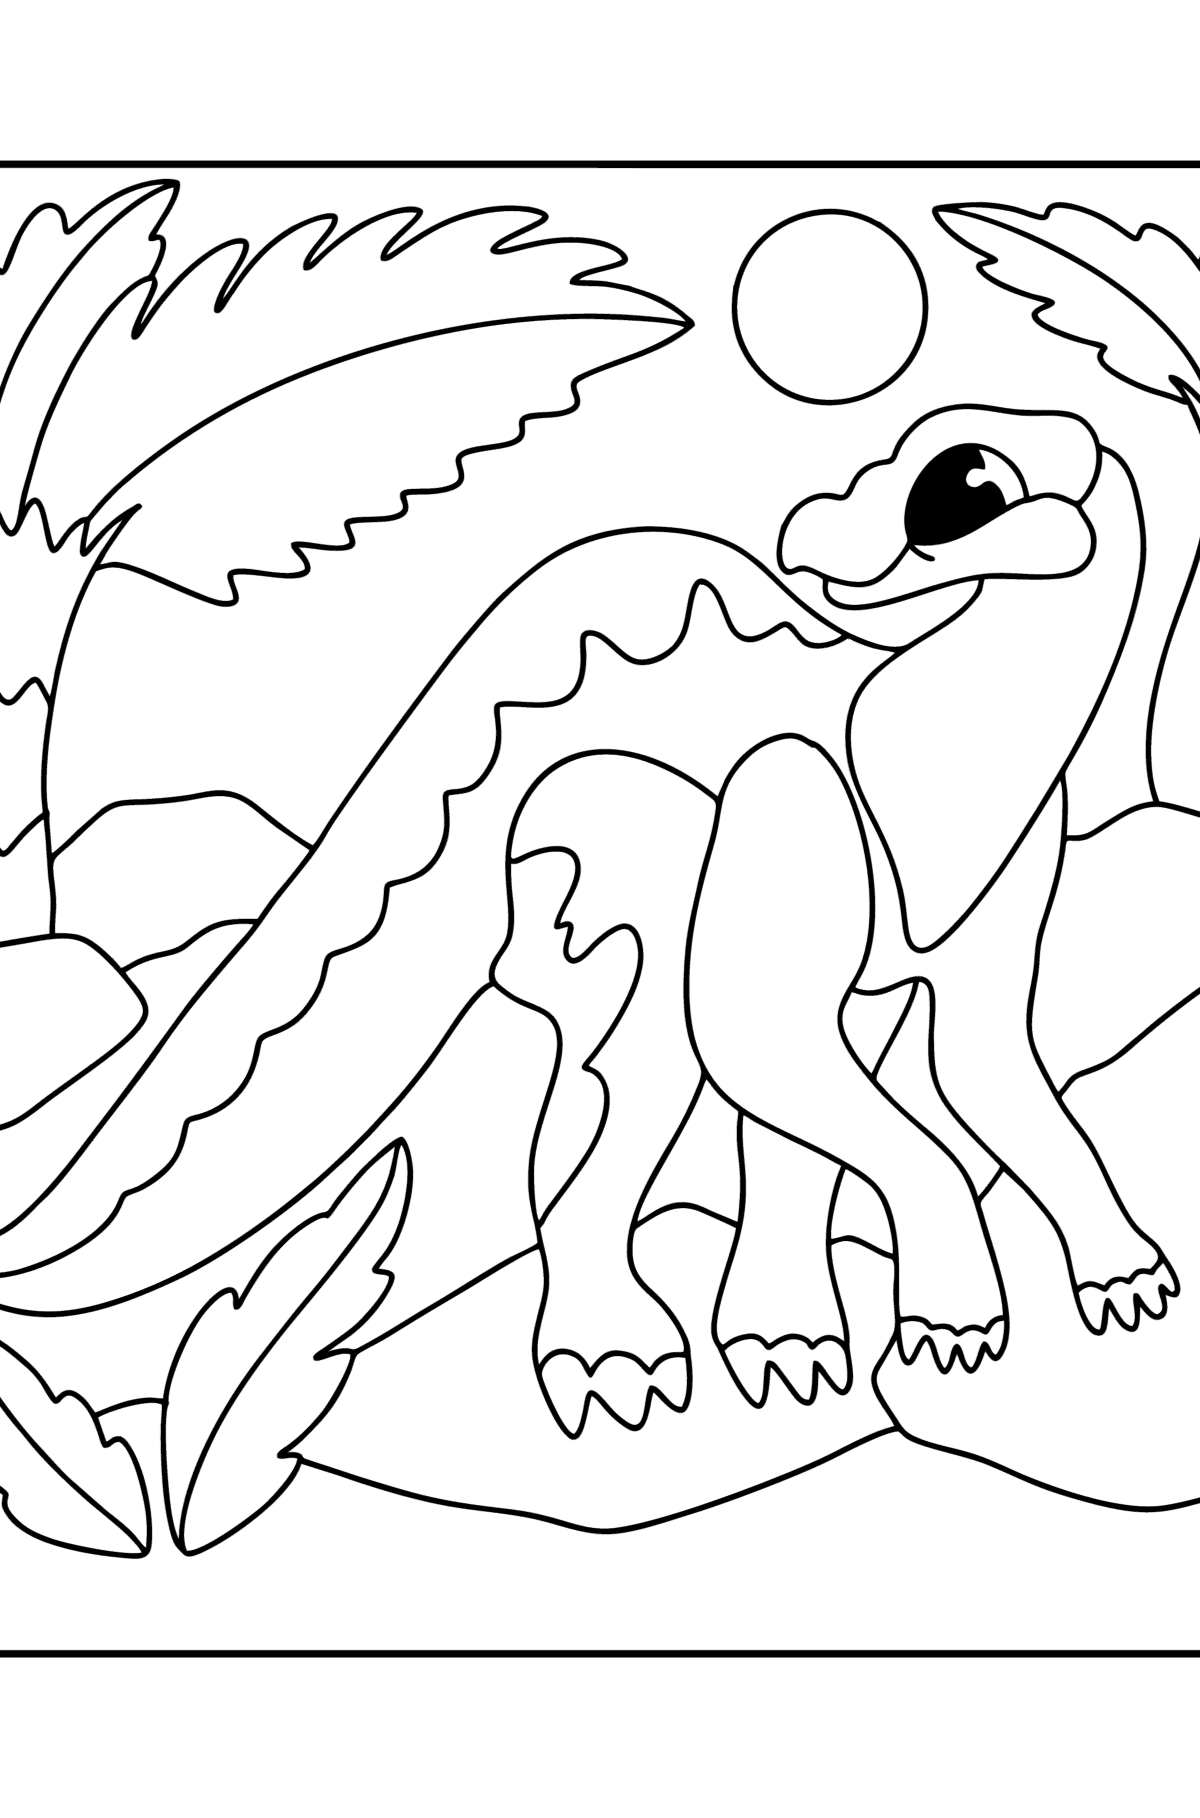 Kleurplaat iguanodon - kleurplaten voor kinderen